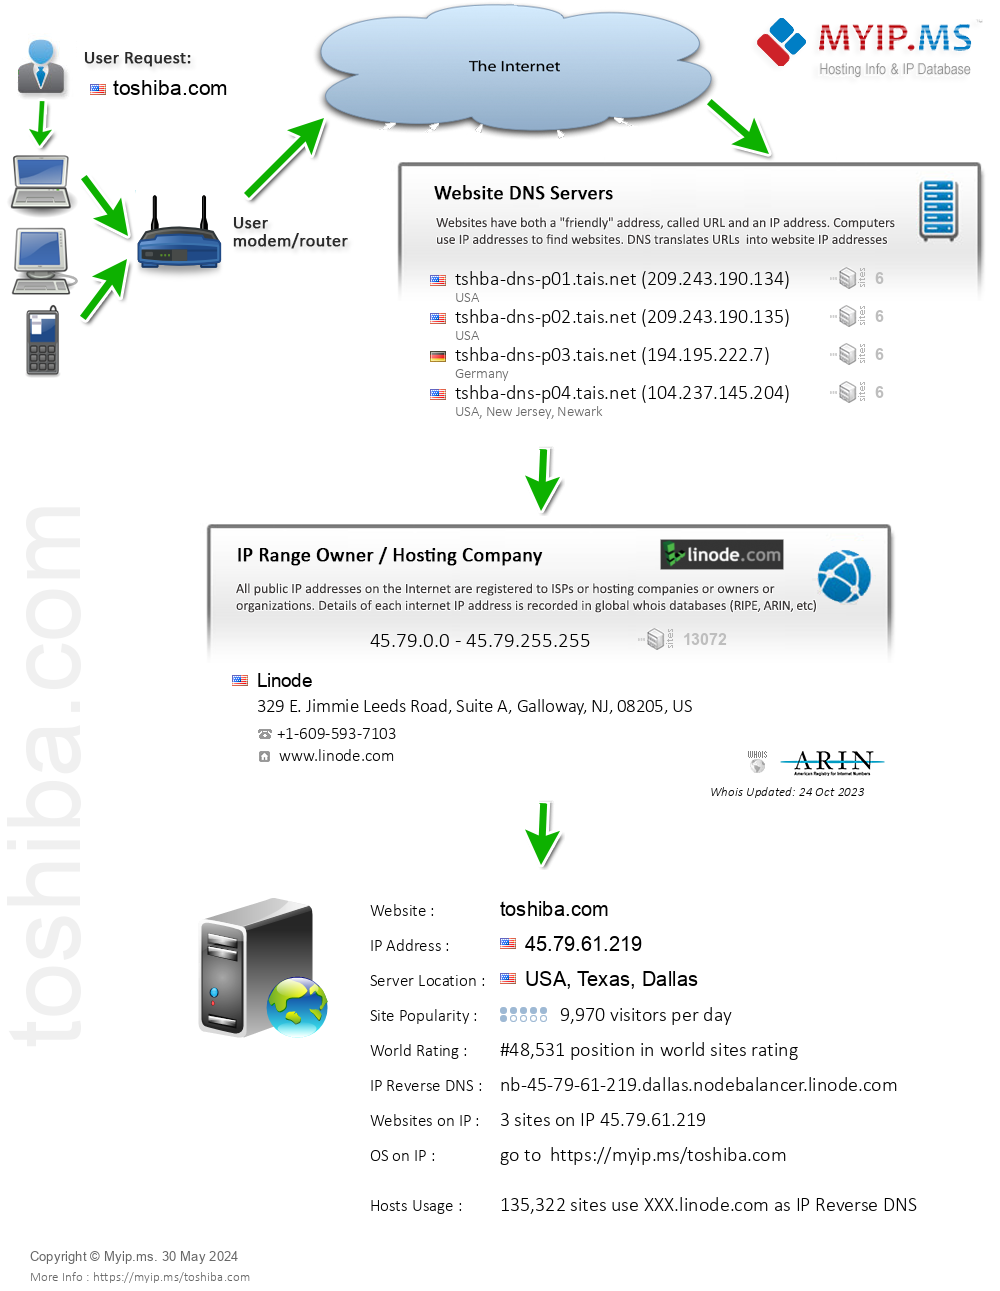 Toshiba.com - Website Hosting Visual IP Diagram